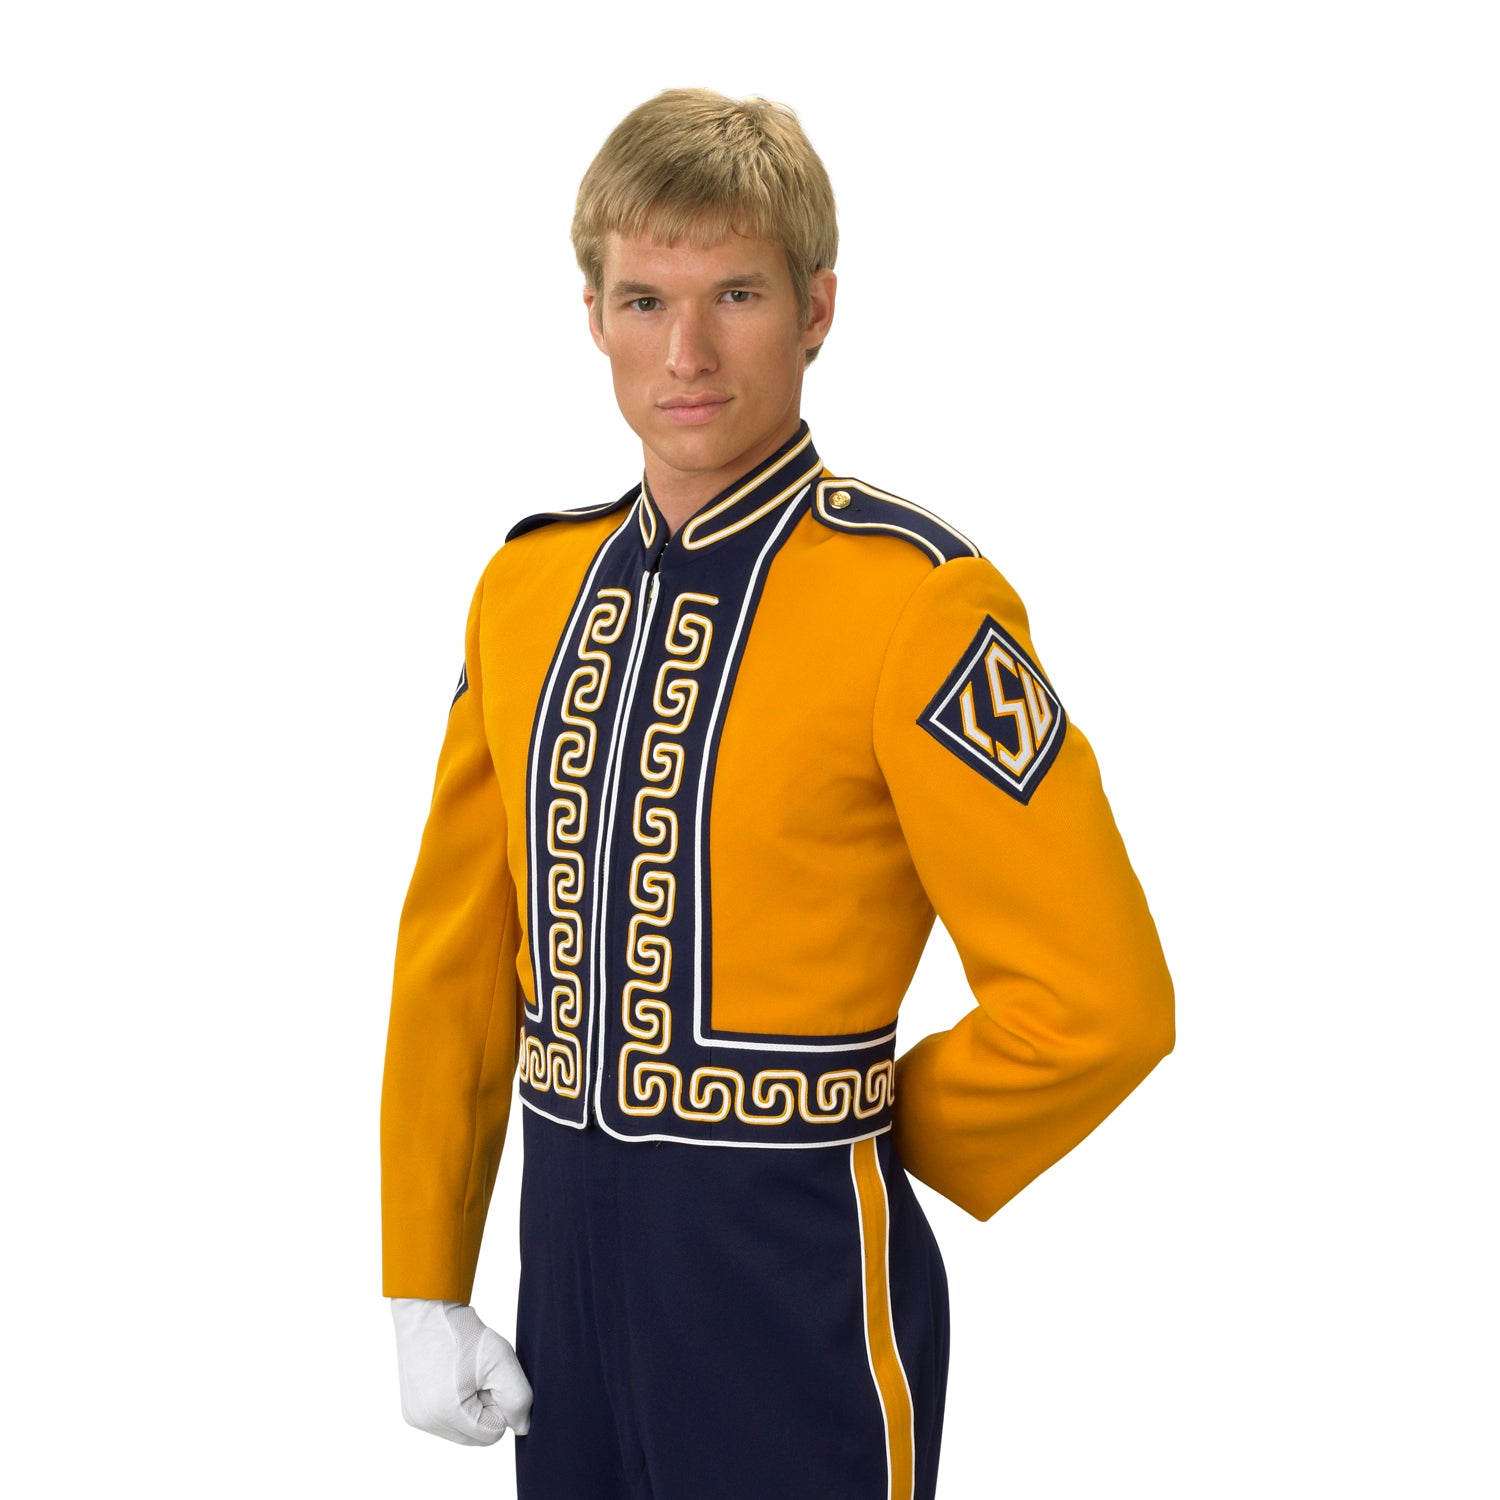 marching band uniform jacket